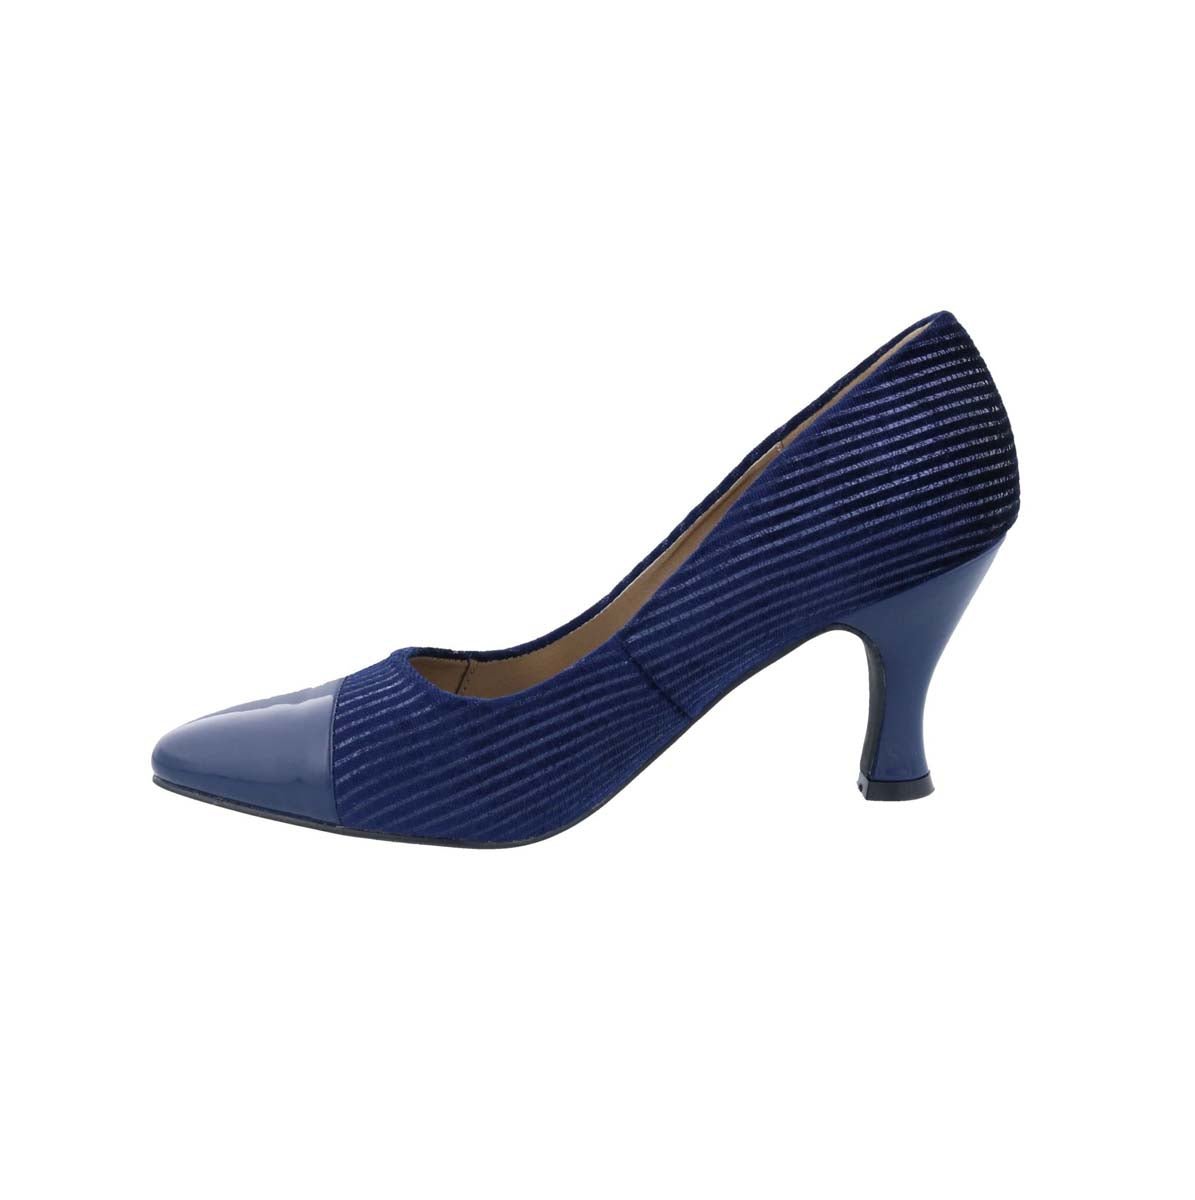 BELLINI ZESTY CORD WOMEN PUMP SLIP-ON IN NAVY CORDUROY - TLW Shoes